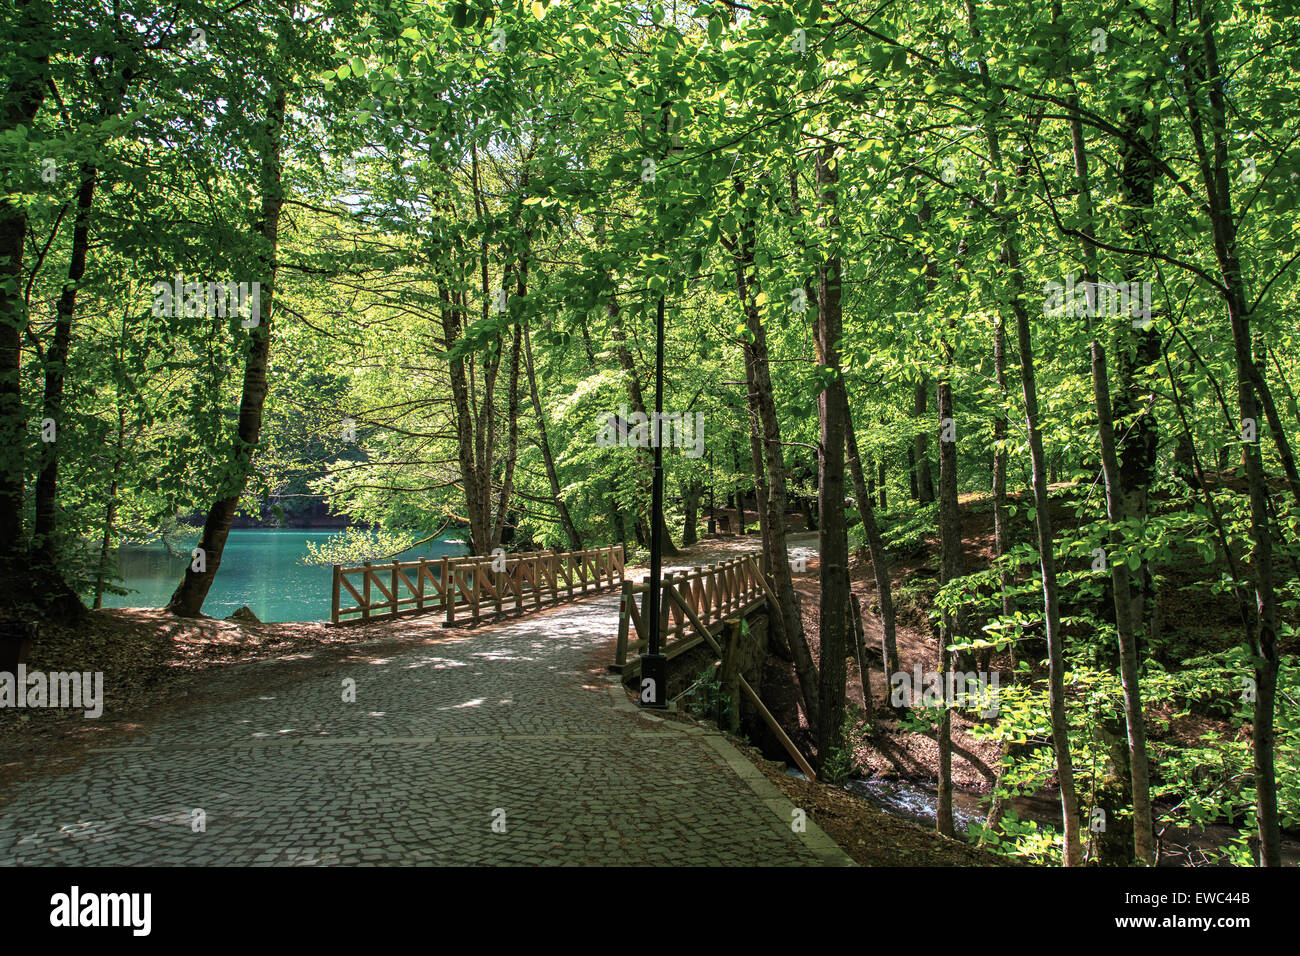 Vista lateral del puente de madera con camino de río o lago en el bosque. Foto de stock